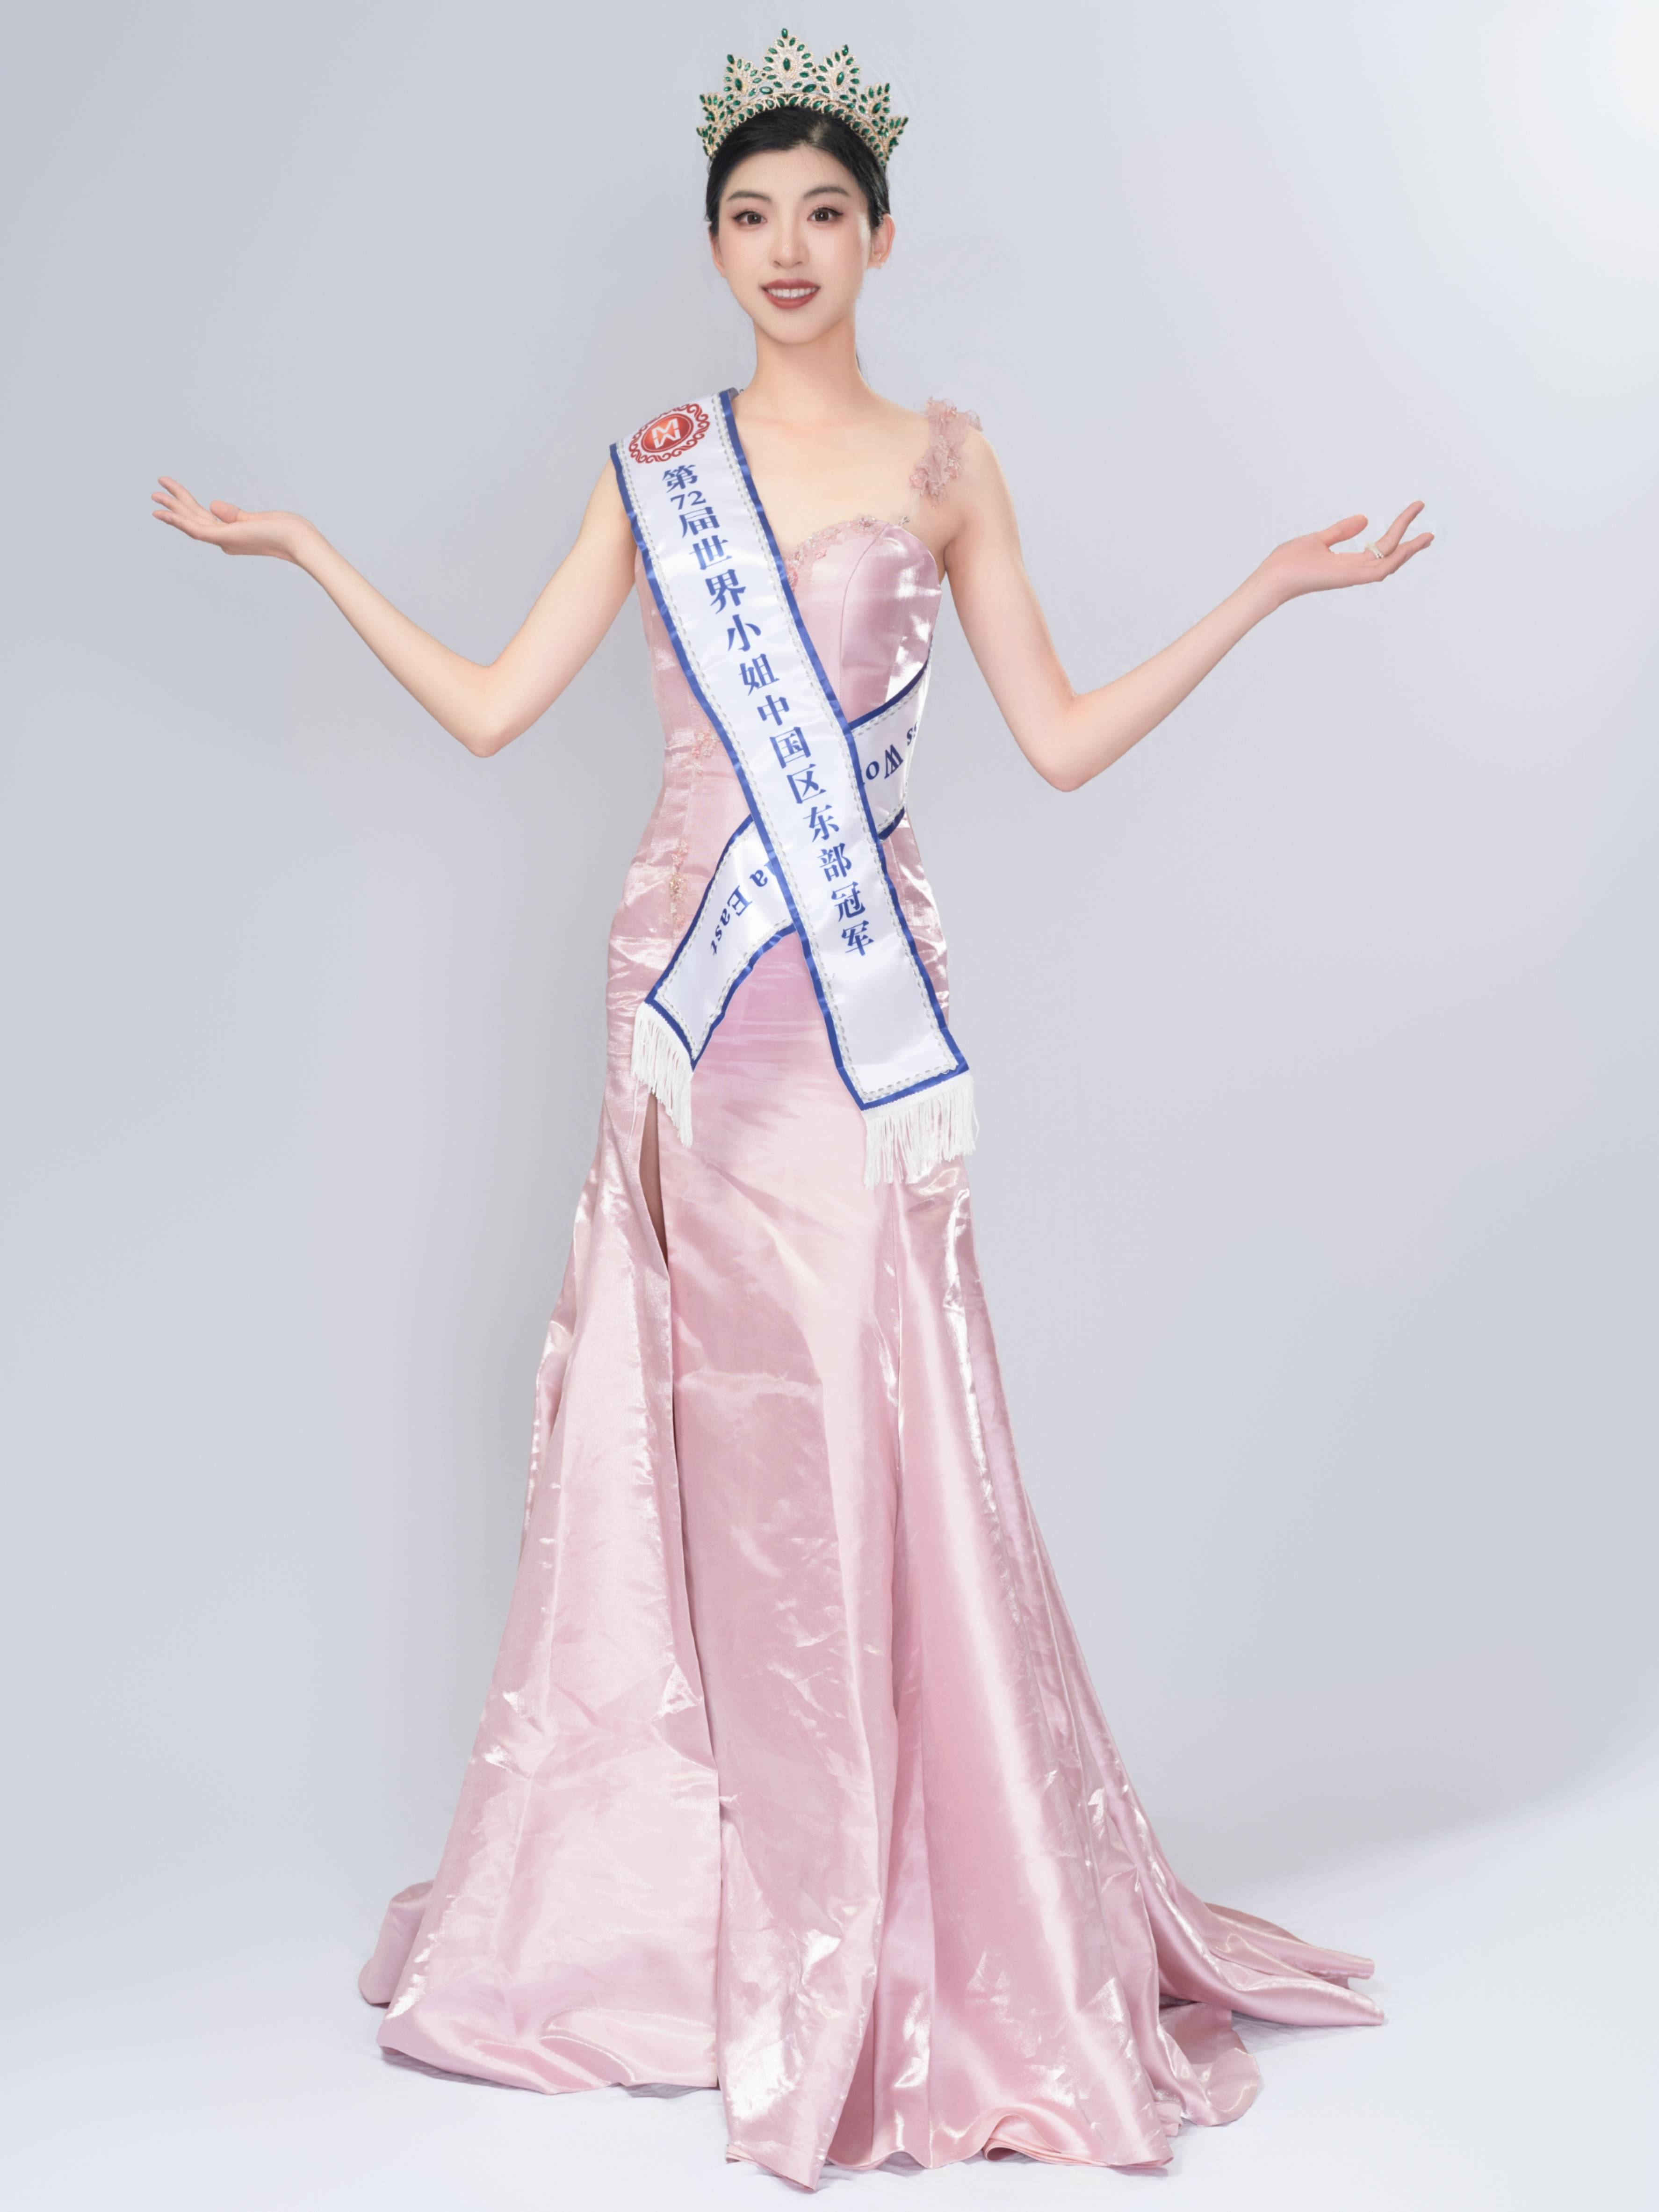 5月20日,洪昊昀获得第72届世界小姐选美大赛中国区东部赛区冠军